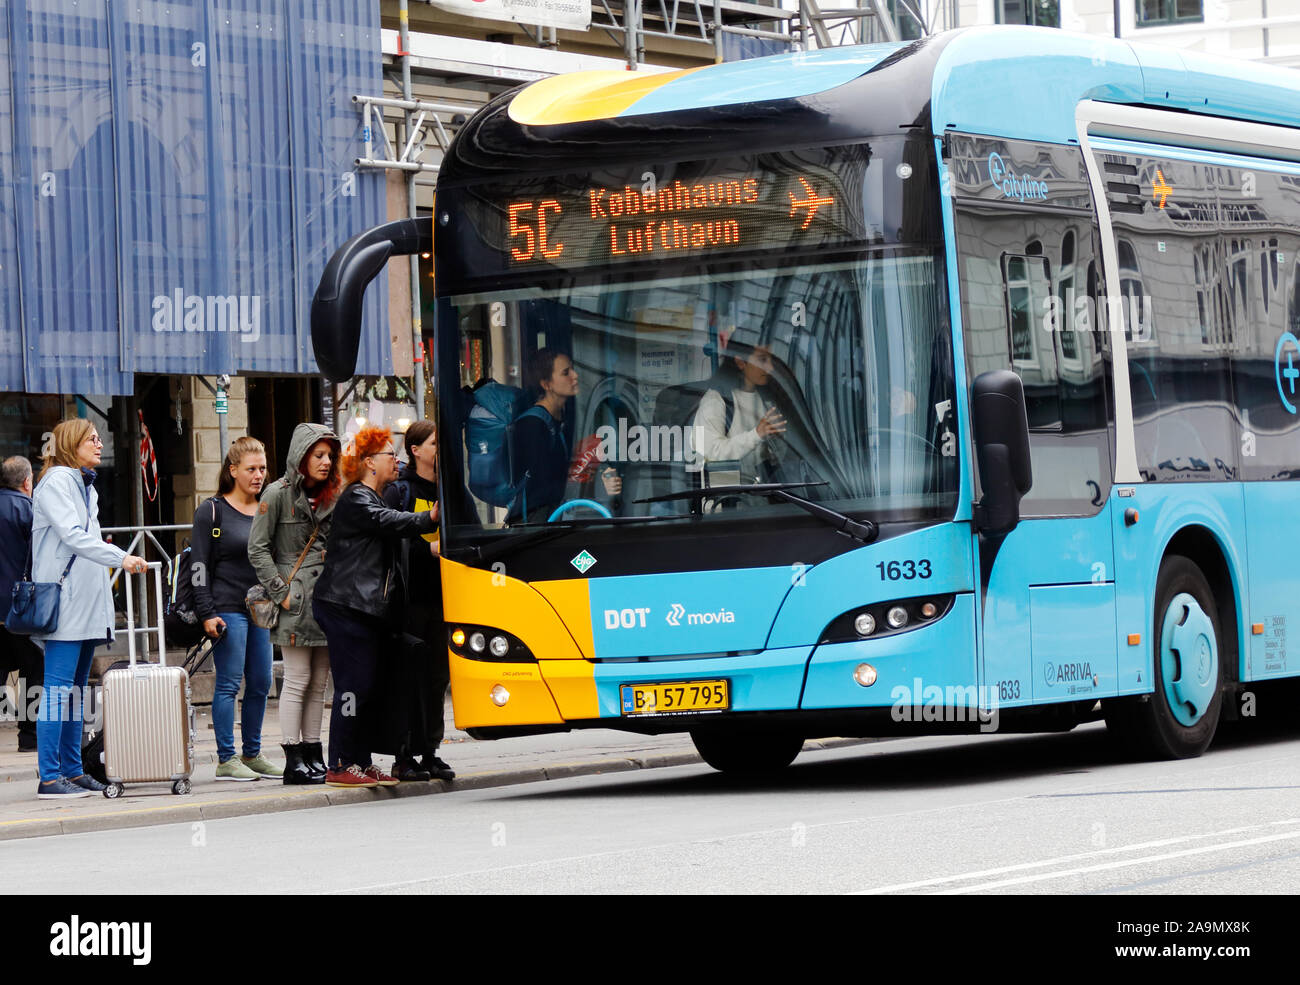 Copenhague, Dinamarca - 4 de septiembre de 2019: Un Copenhague el autobús de transporte público en servicio de la línea 5C con destino al aeropuerto de Copenhague ha llamado Foto de stock